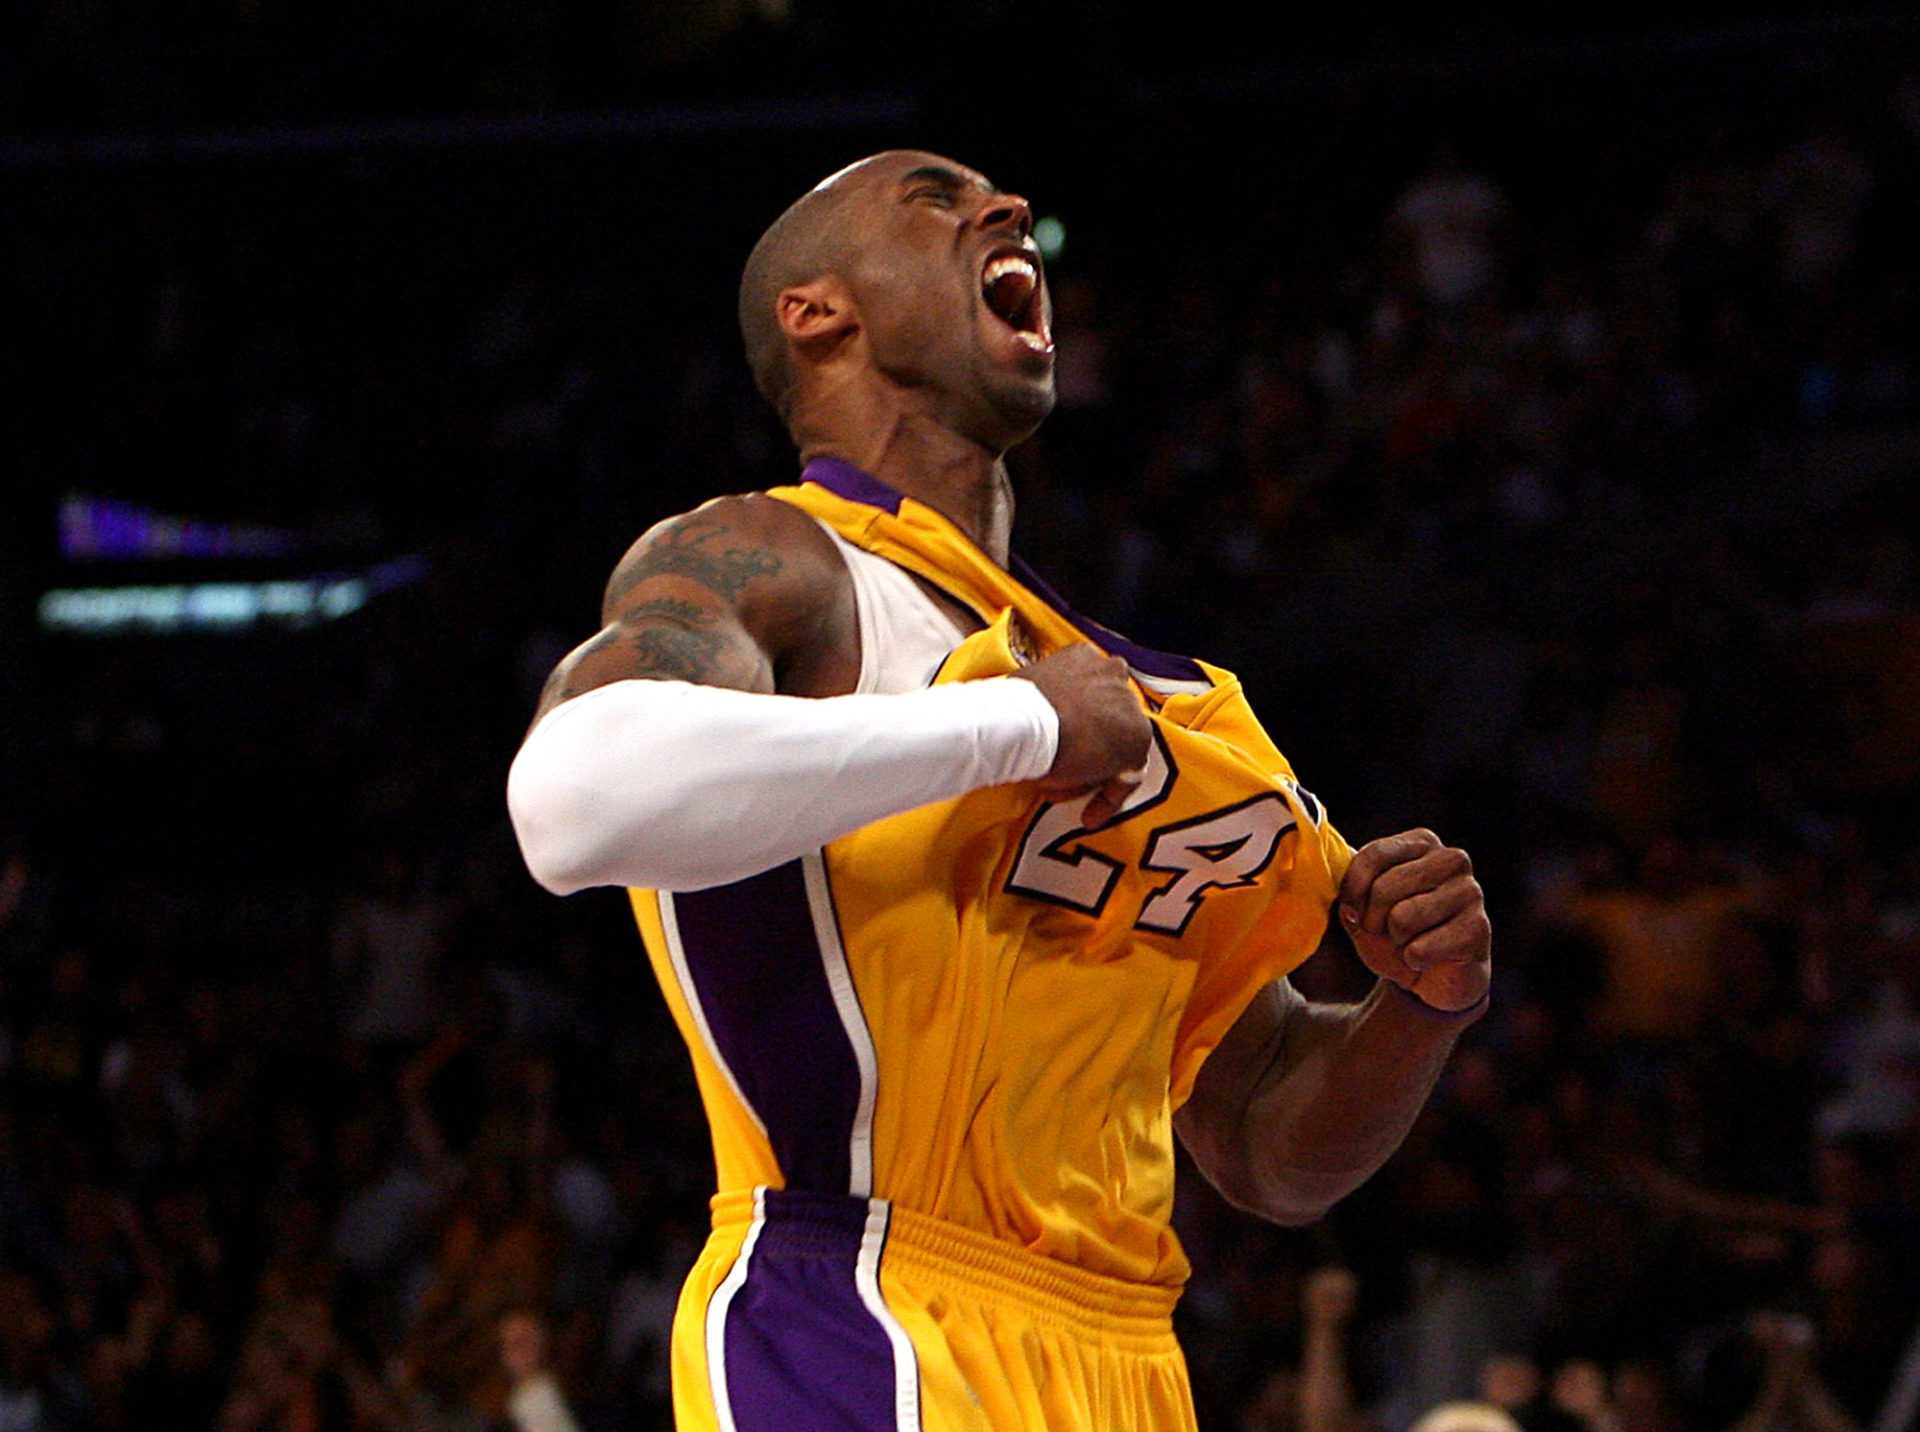 `` J'espère que Kobe serait fier de moi '': Nick Kyrgios rend un hommage émotionnel à la légende de la NBA Kobe Bryant